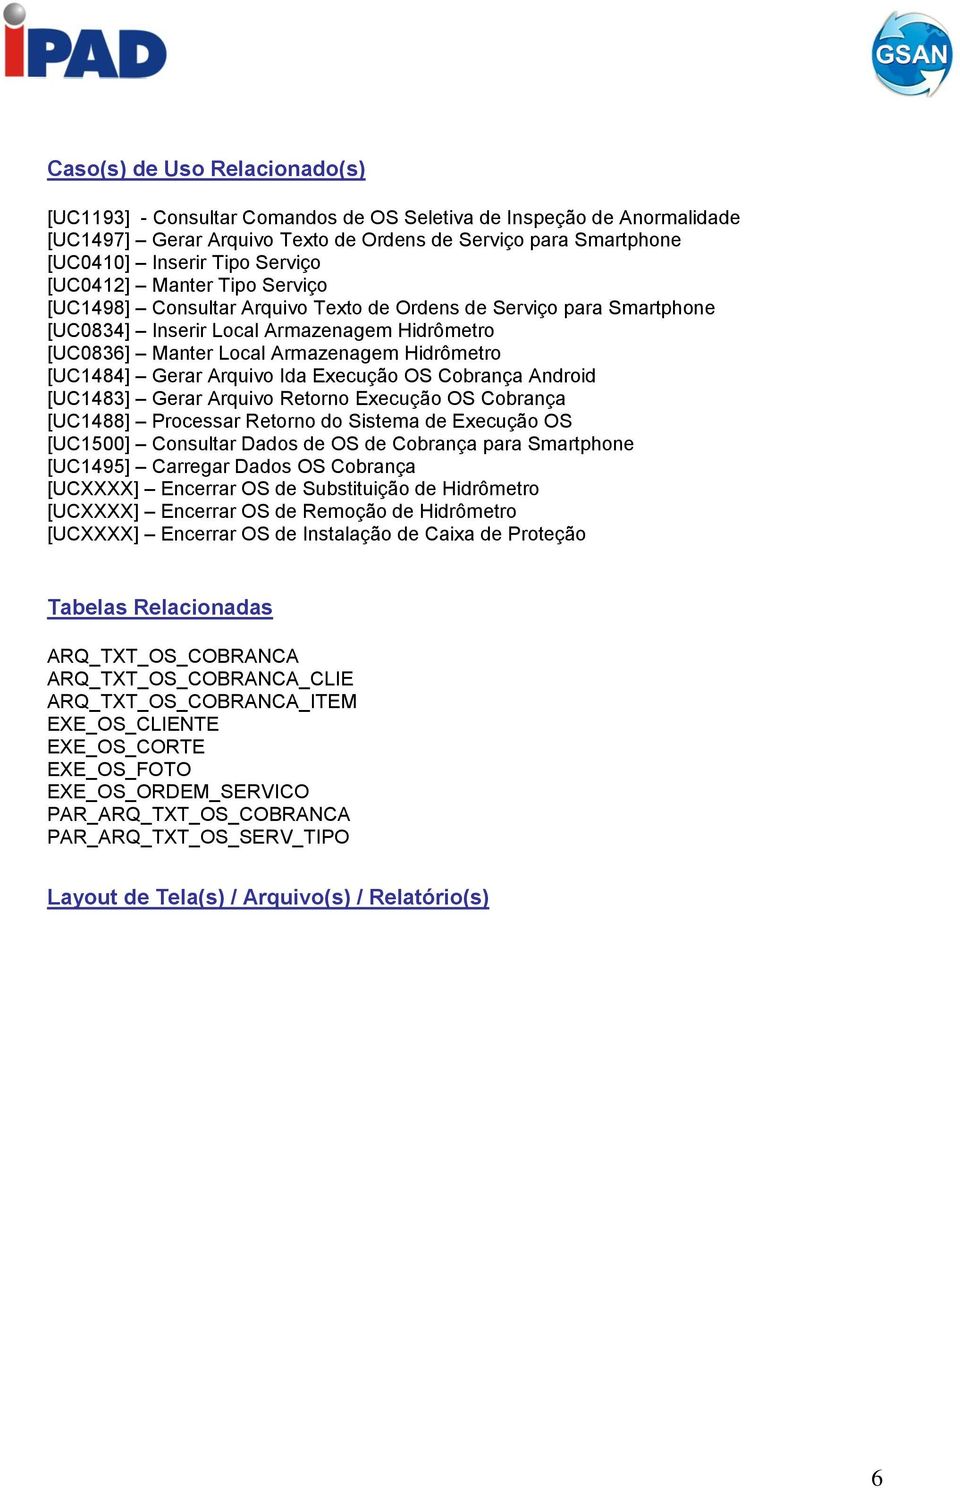 Gerar Arquivo Ida Execução OS Cobrança Android [UC1483] Gerar Arquivo Retorno Execução OS Cobrança [UC1488] Processar Retorno do Sistema de Execução OS [UC1500] Consultar Dados de OS de Cobrança para